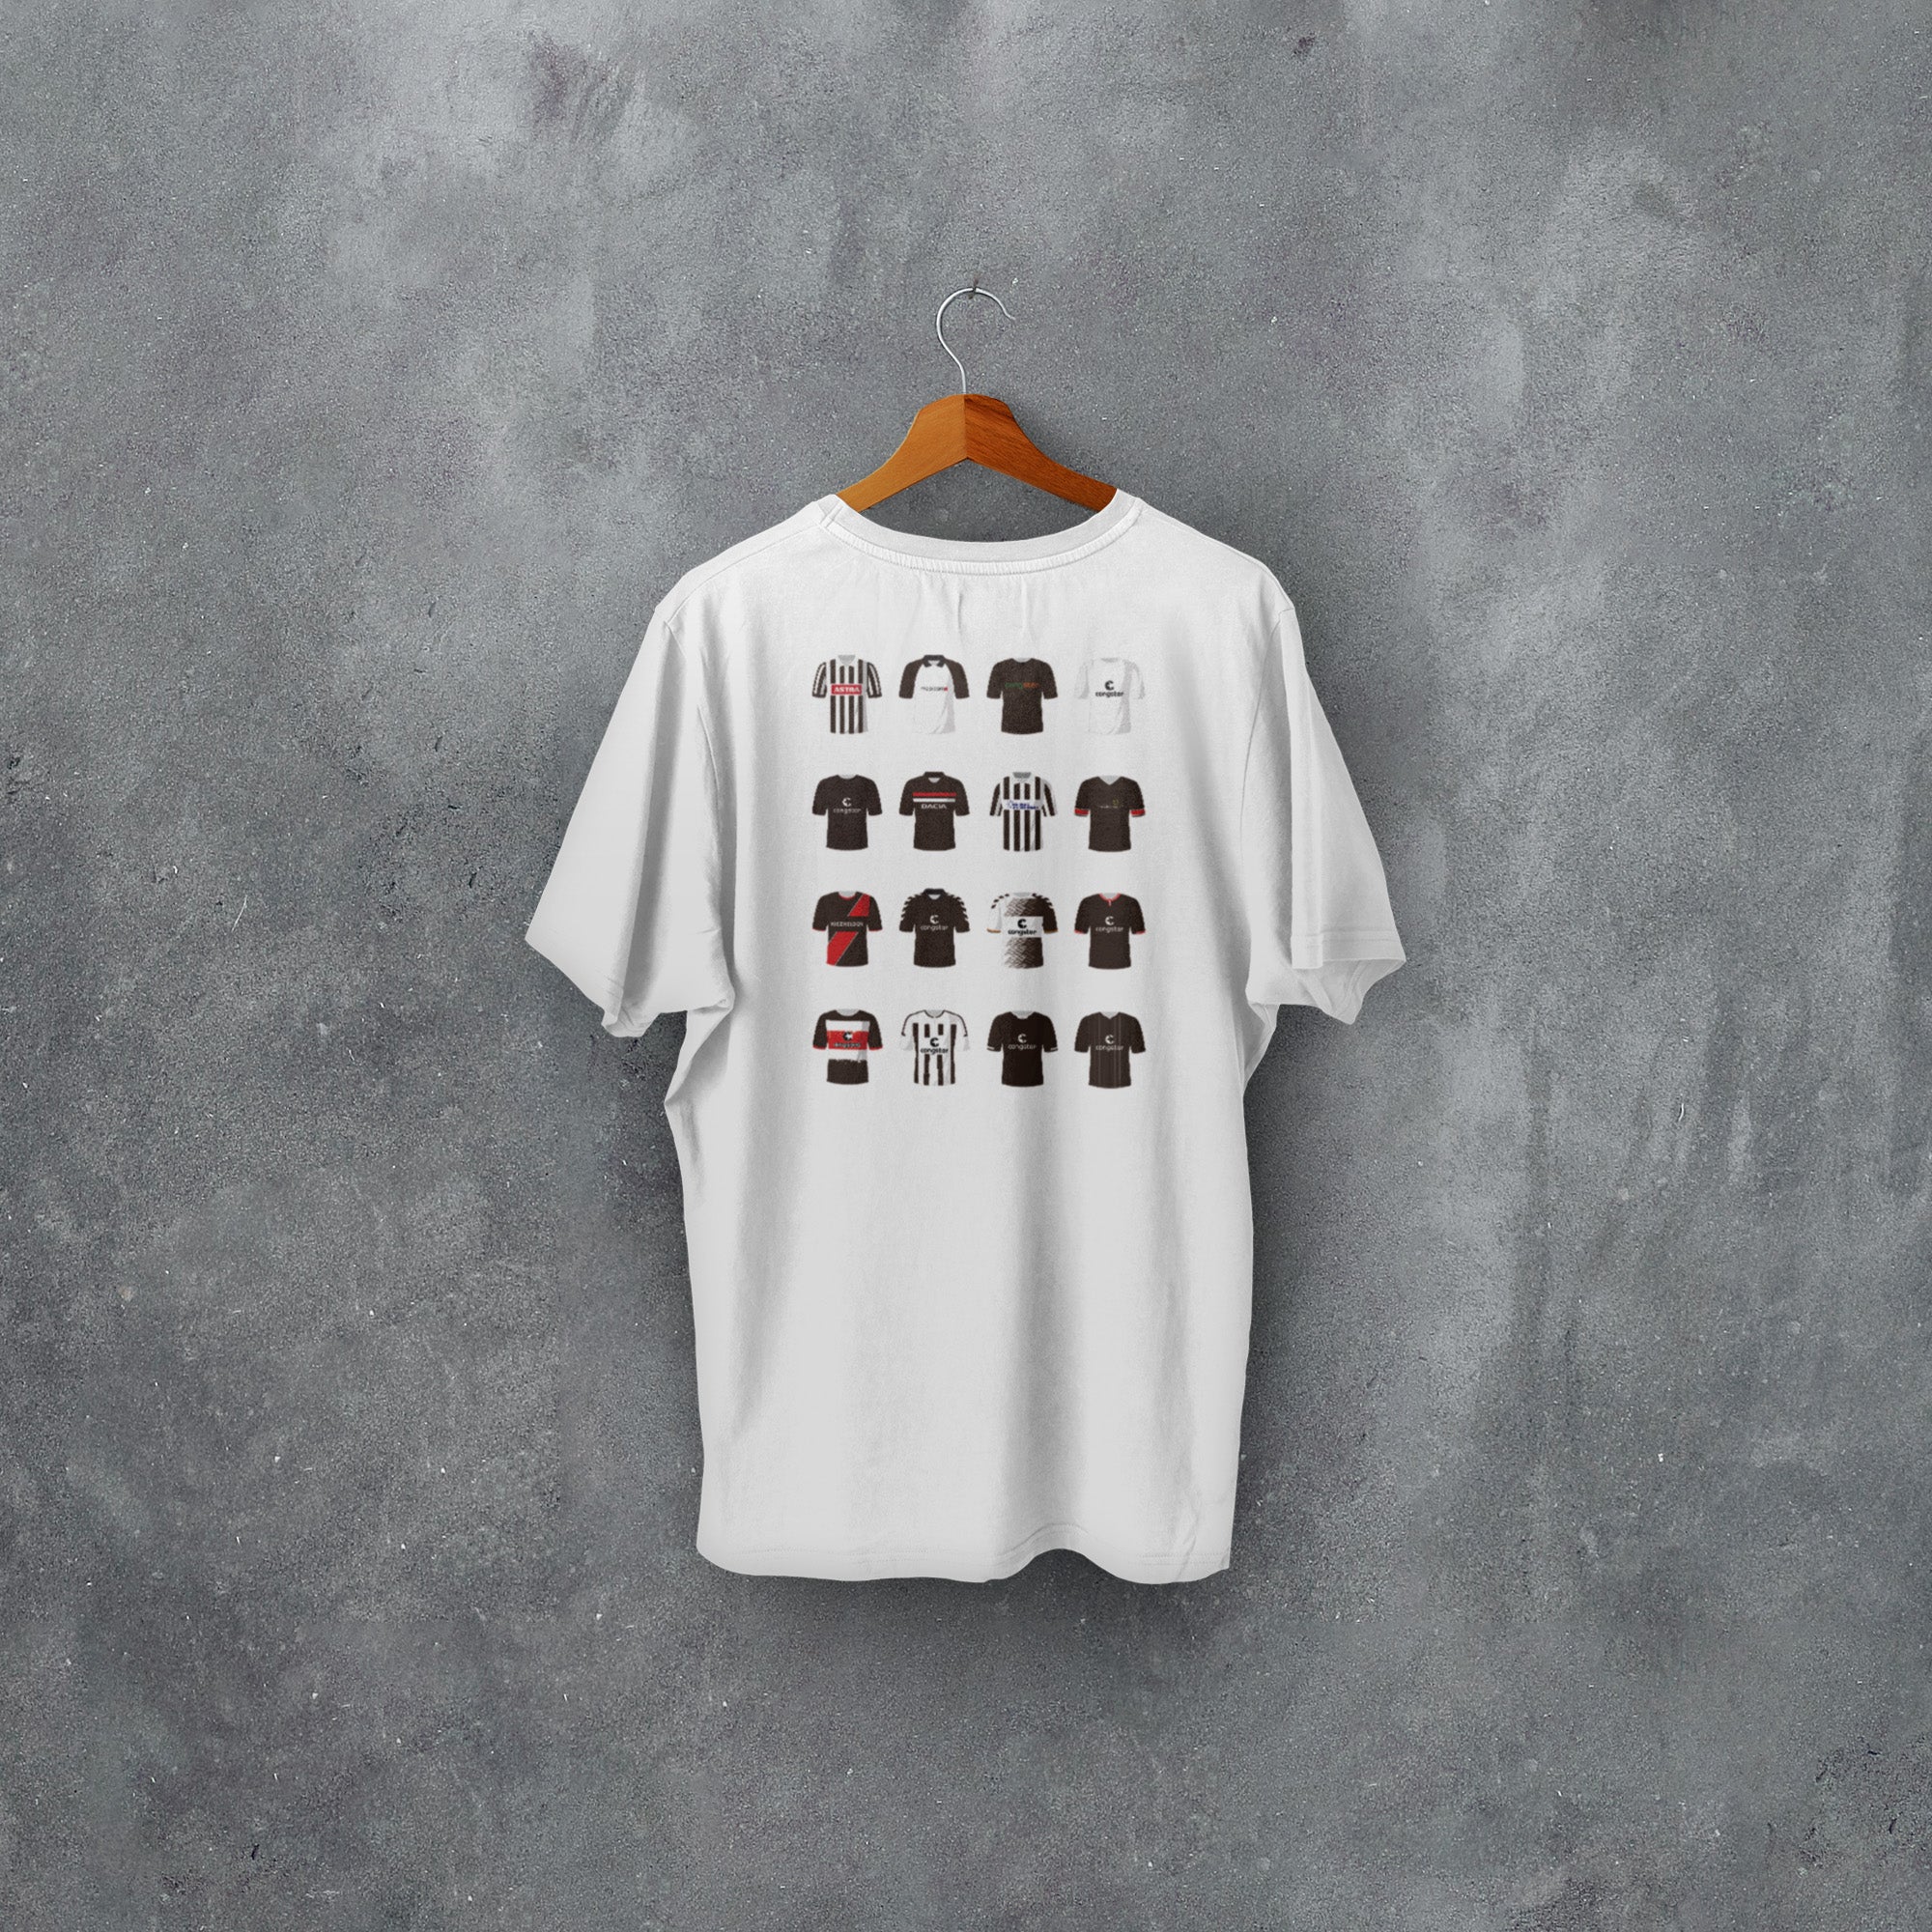 St Pauli Classic Kits Football T-Shirt